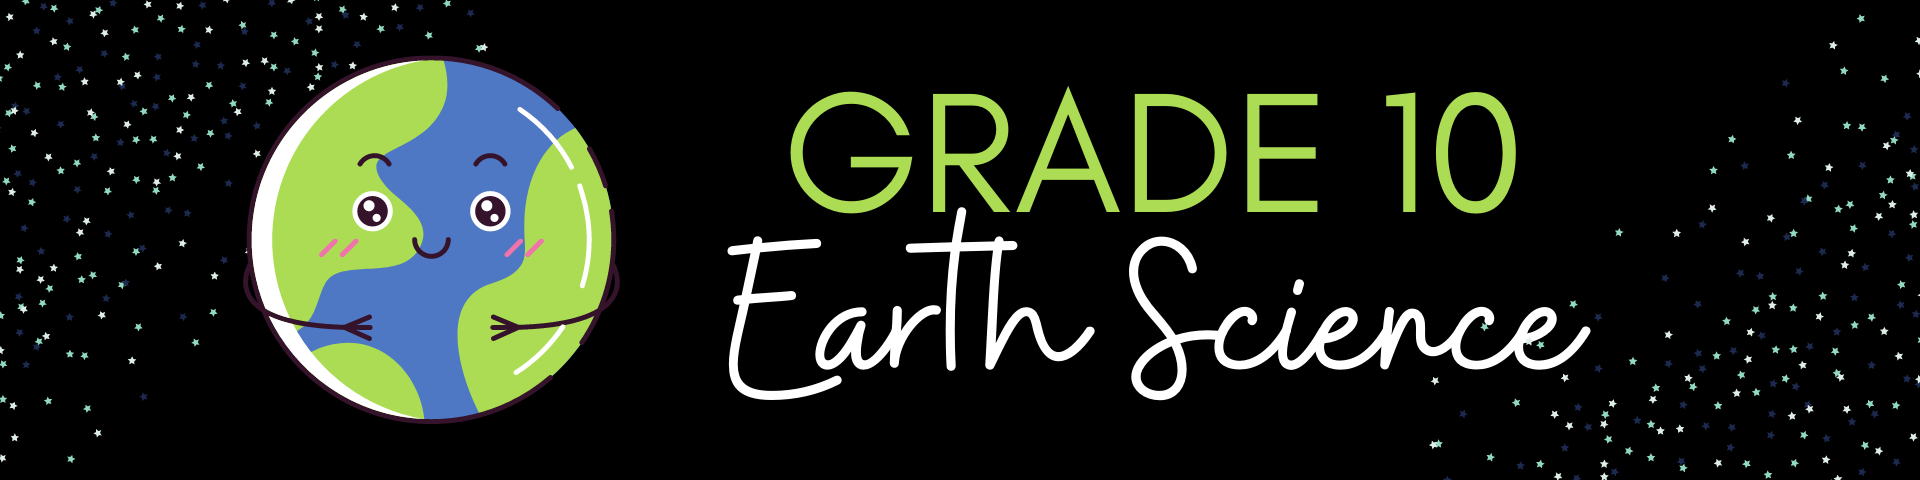 Grade 10 Earth Science